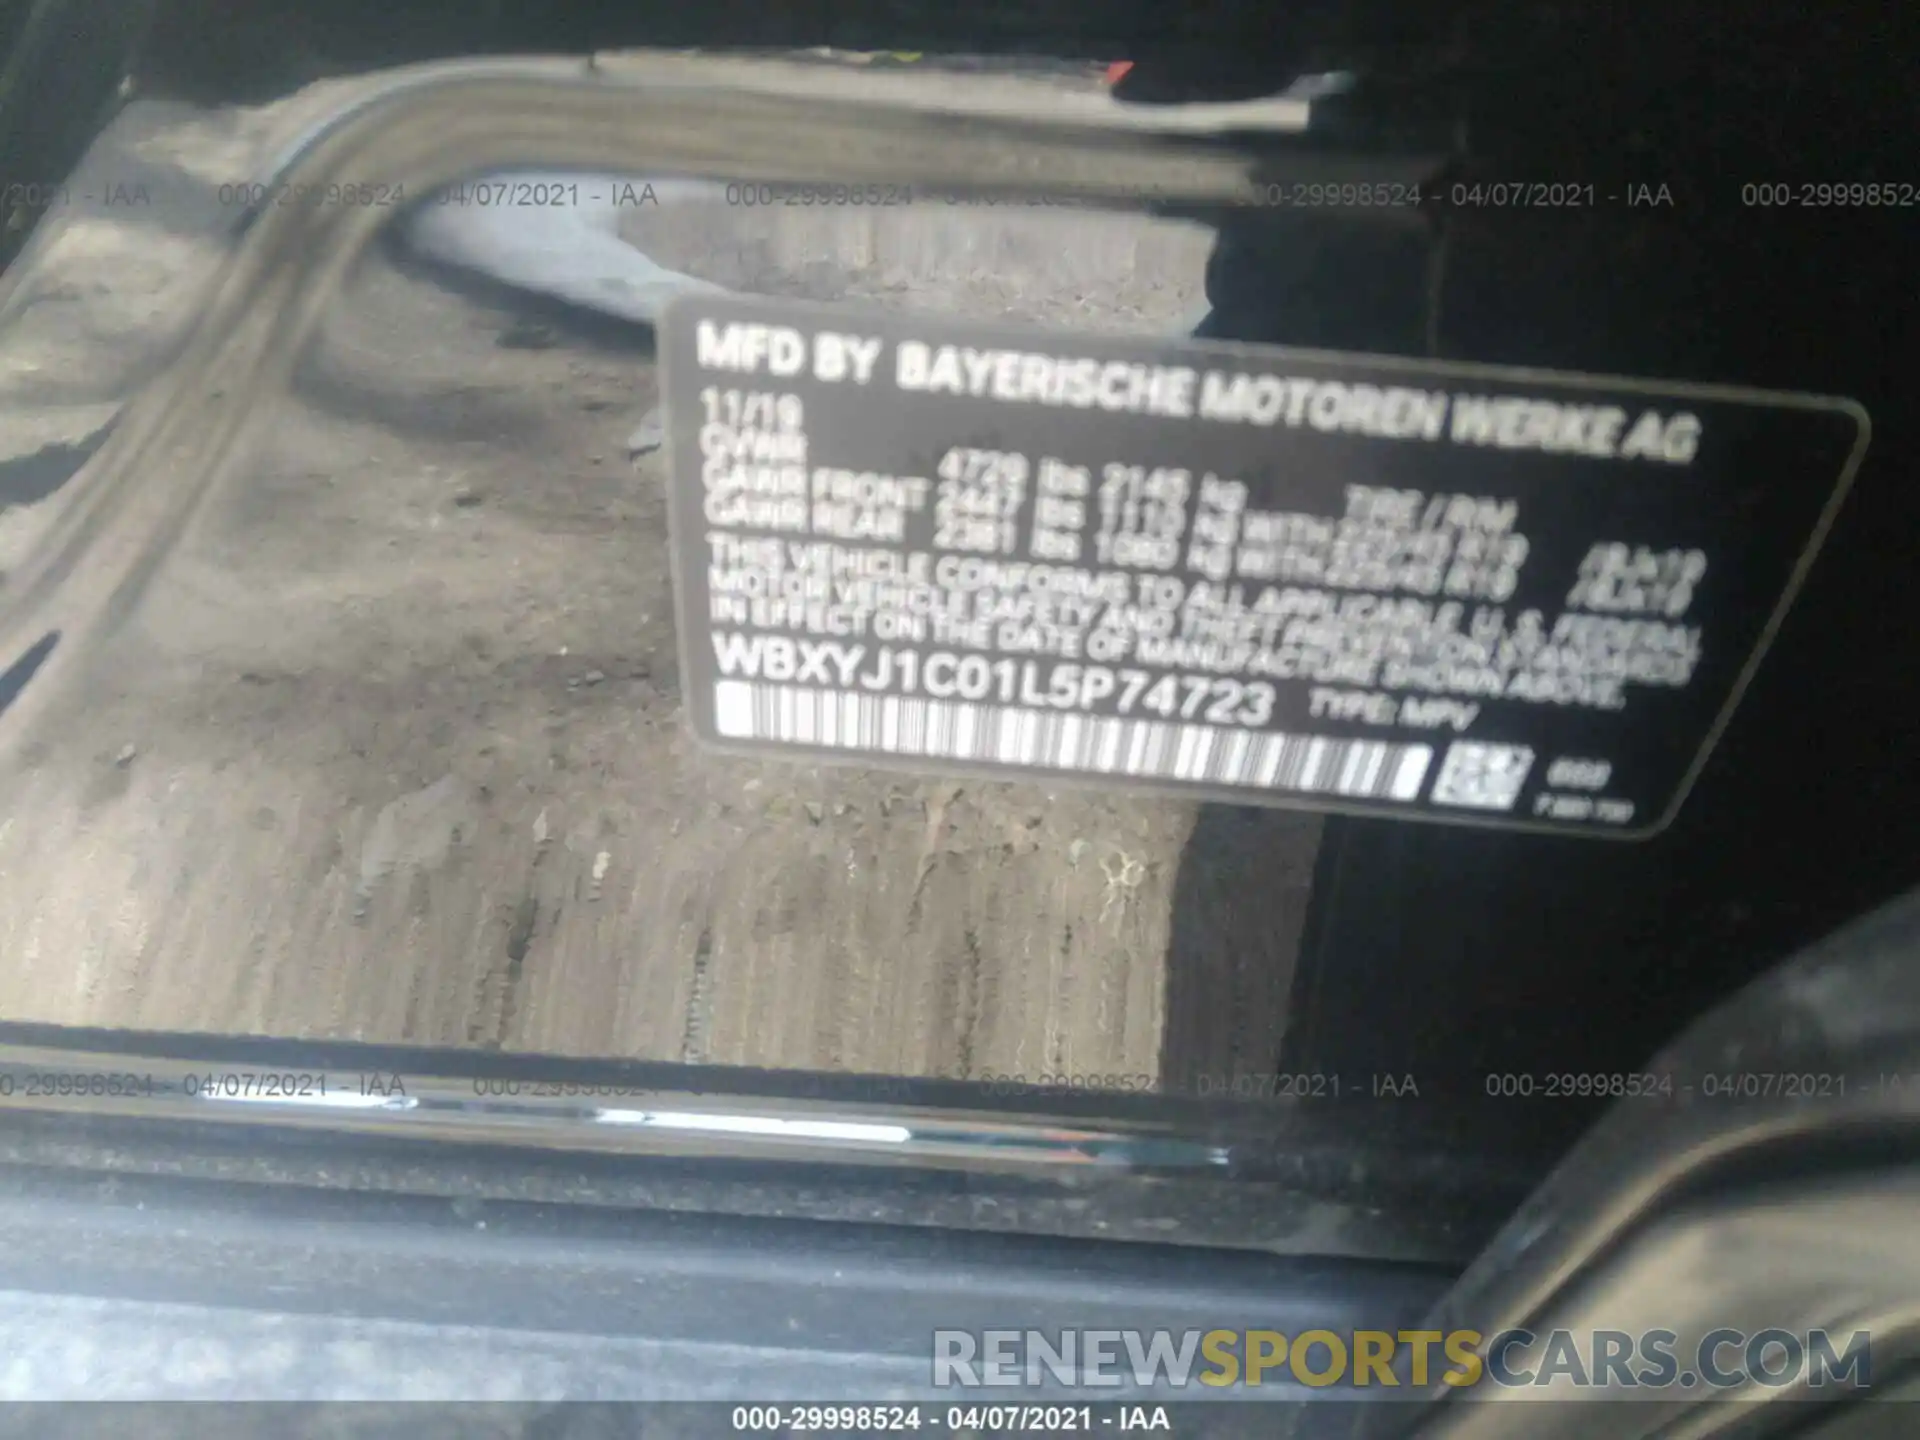 9 Photograph of a damaged car WBXYJ1C01L5P74723 BMW X2 2020